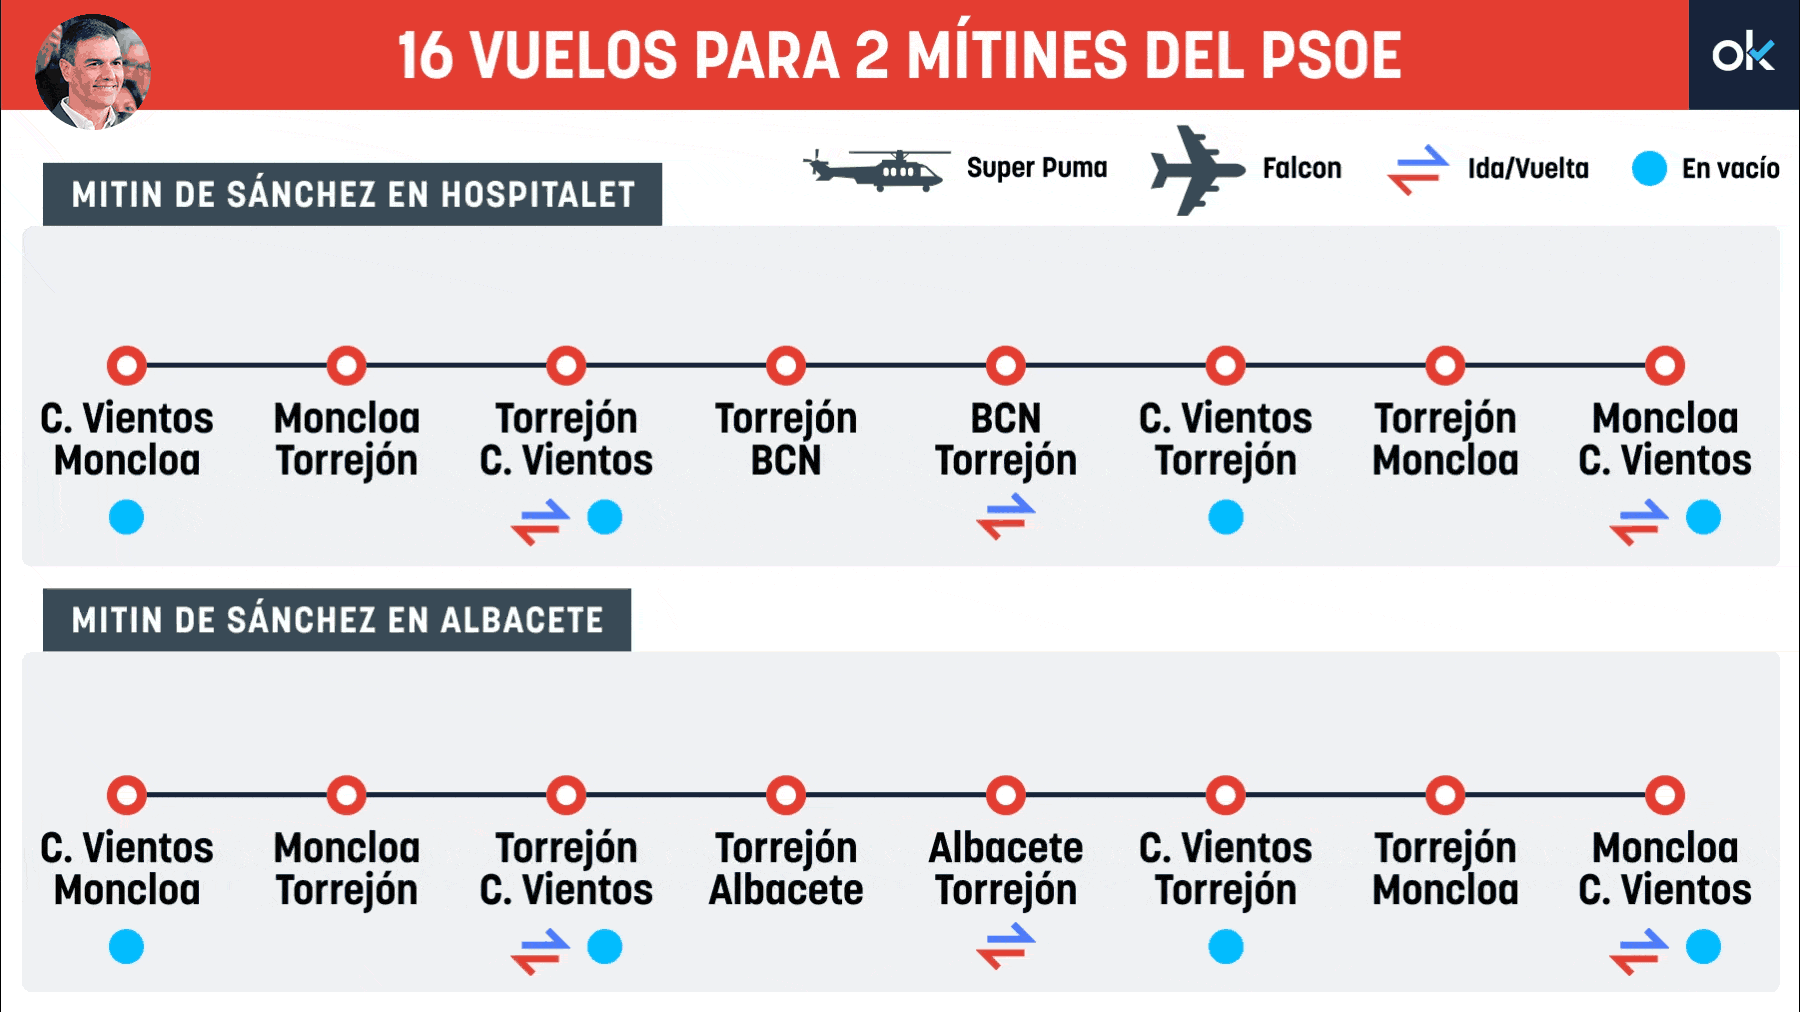 Sánchez voló en Super Puma y Falcon este domingo y lunes a dos actos del PSOE.